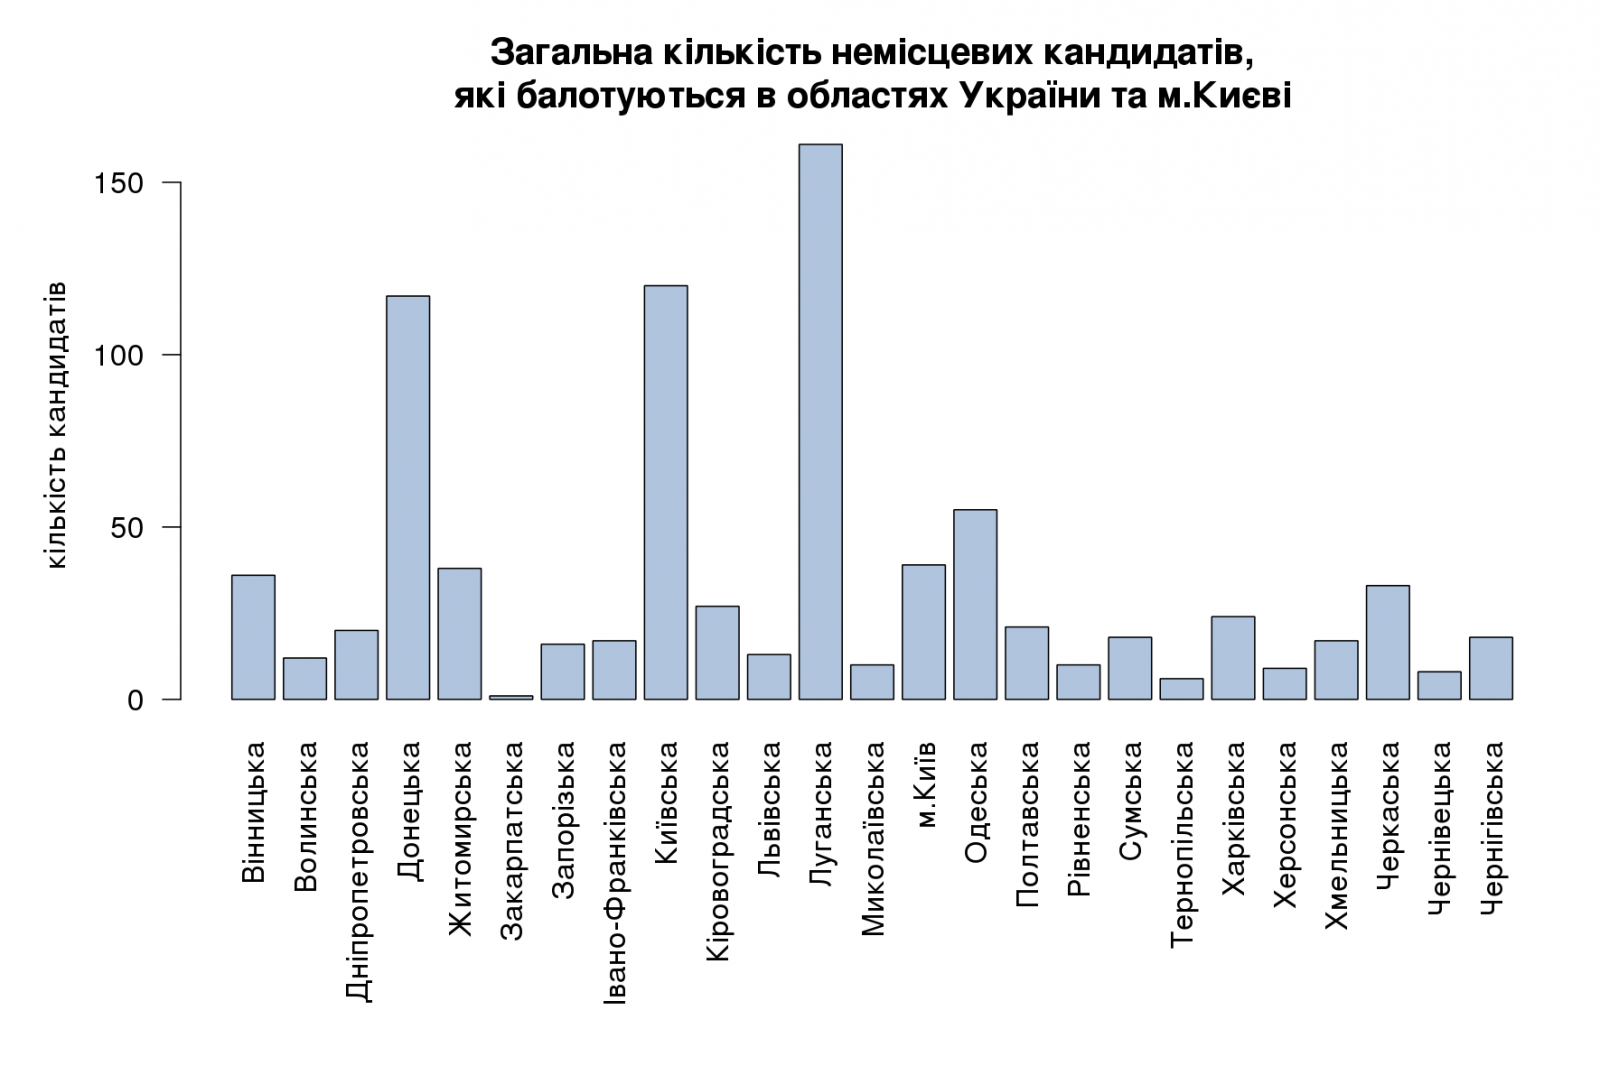 Загальна кількість немісцевих кандидатів, які балотуються в областях України та м.Києві